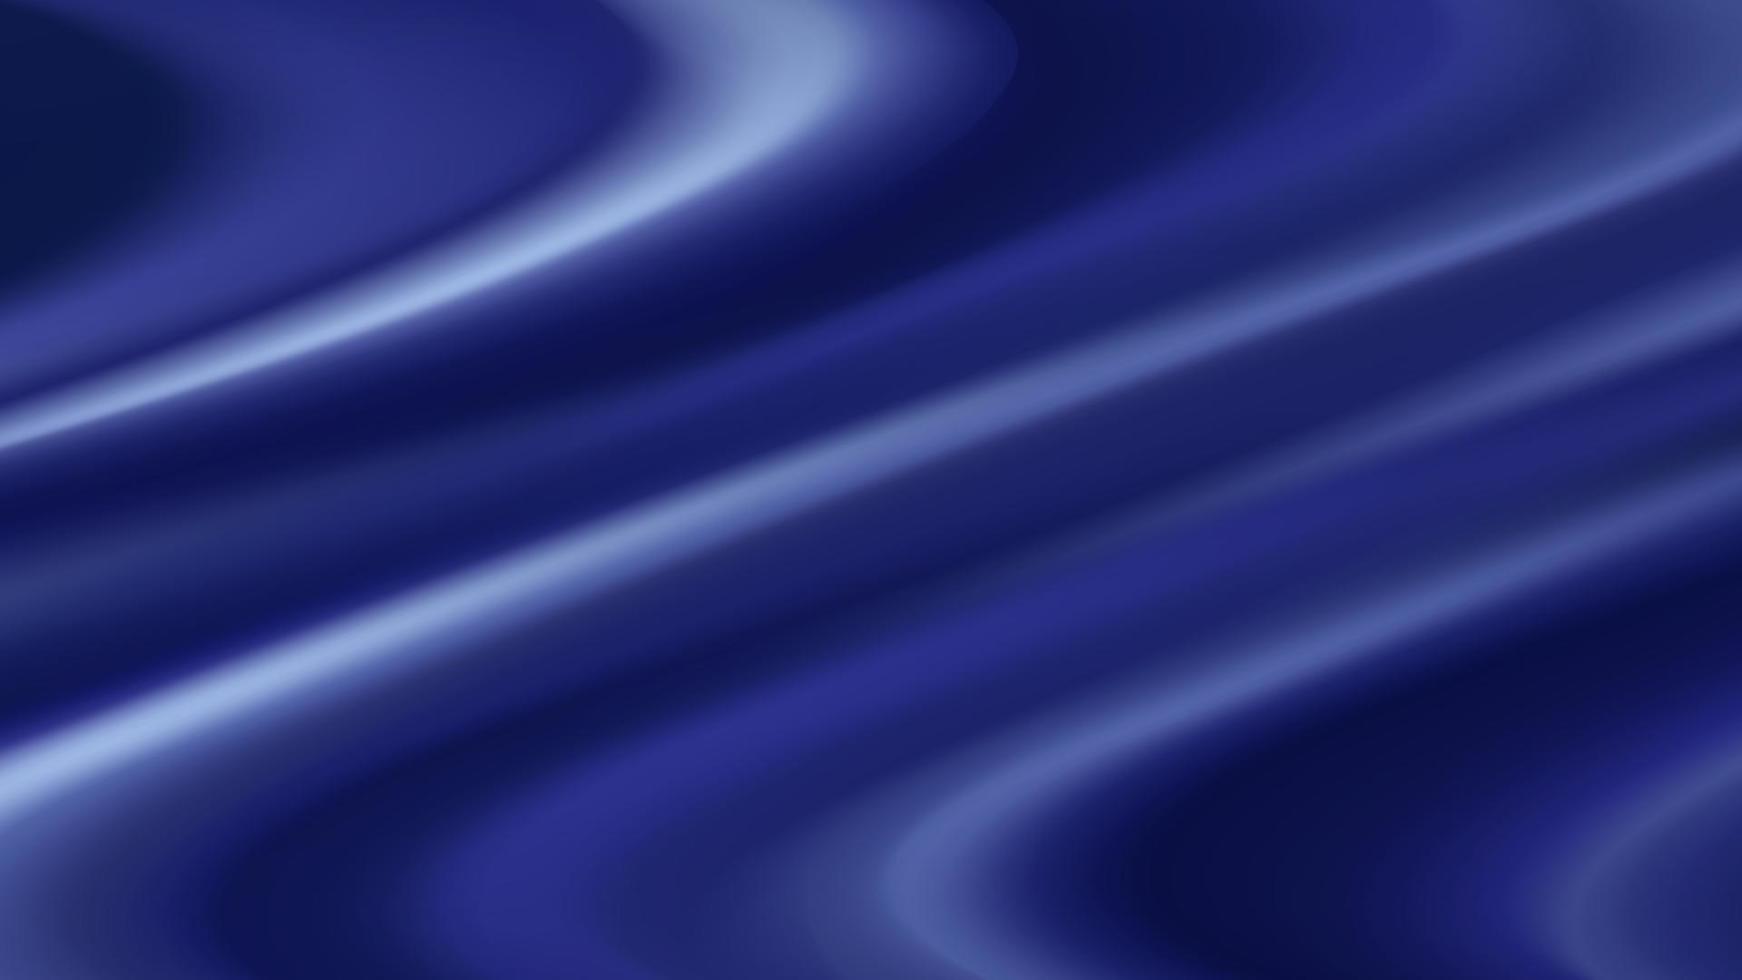 astratto vettore sfondo lusso buio blu stoffa o liquido onda o ondulato pieghe di raso velluto Materiale, lussuoso sfondo o elegante sfondo